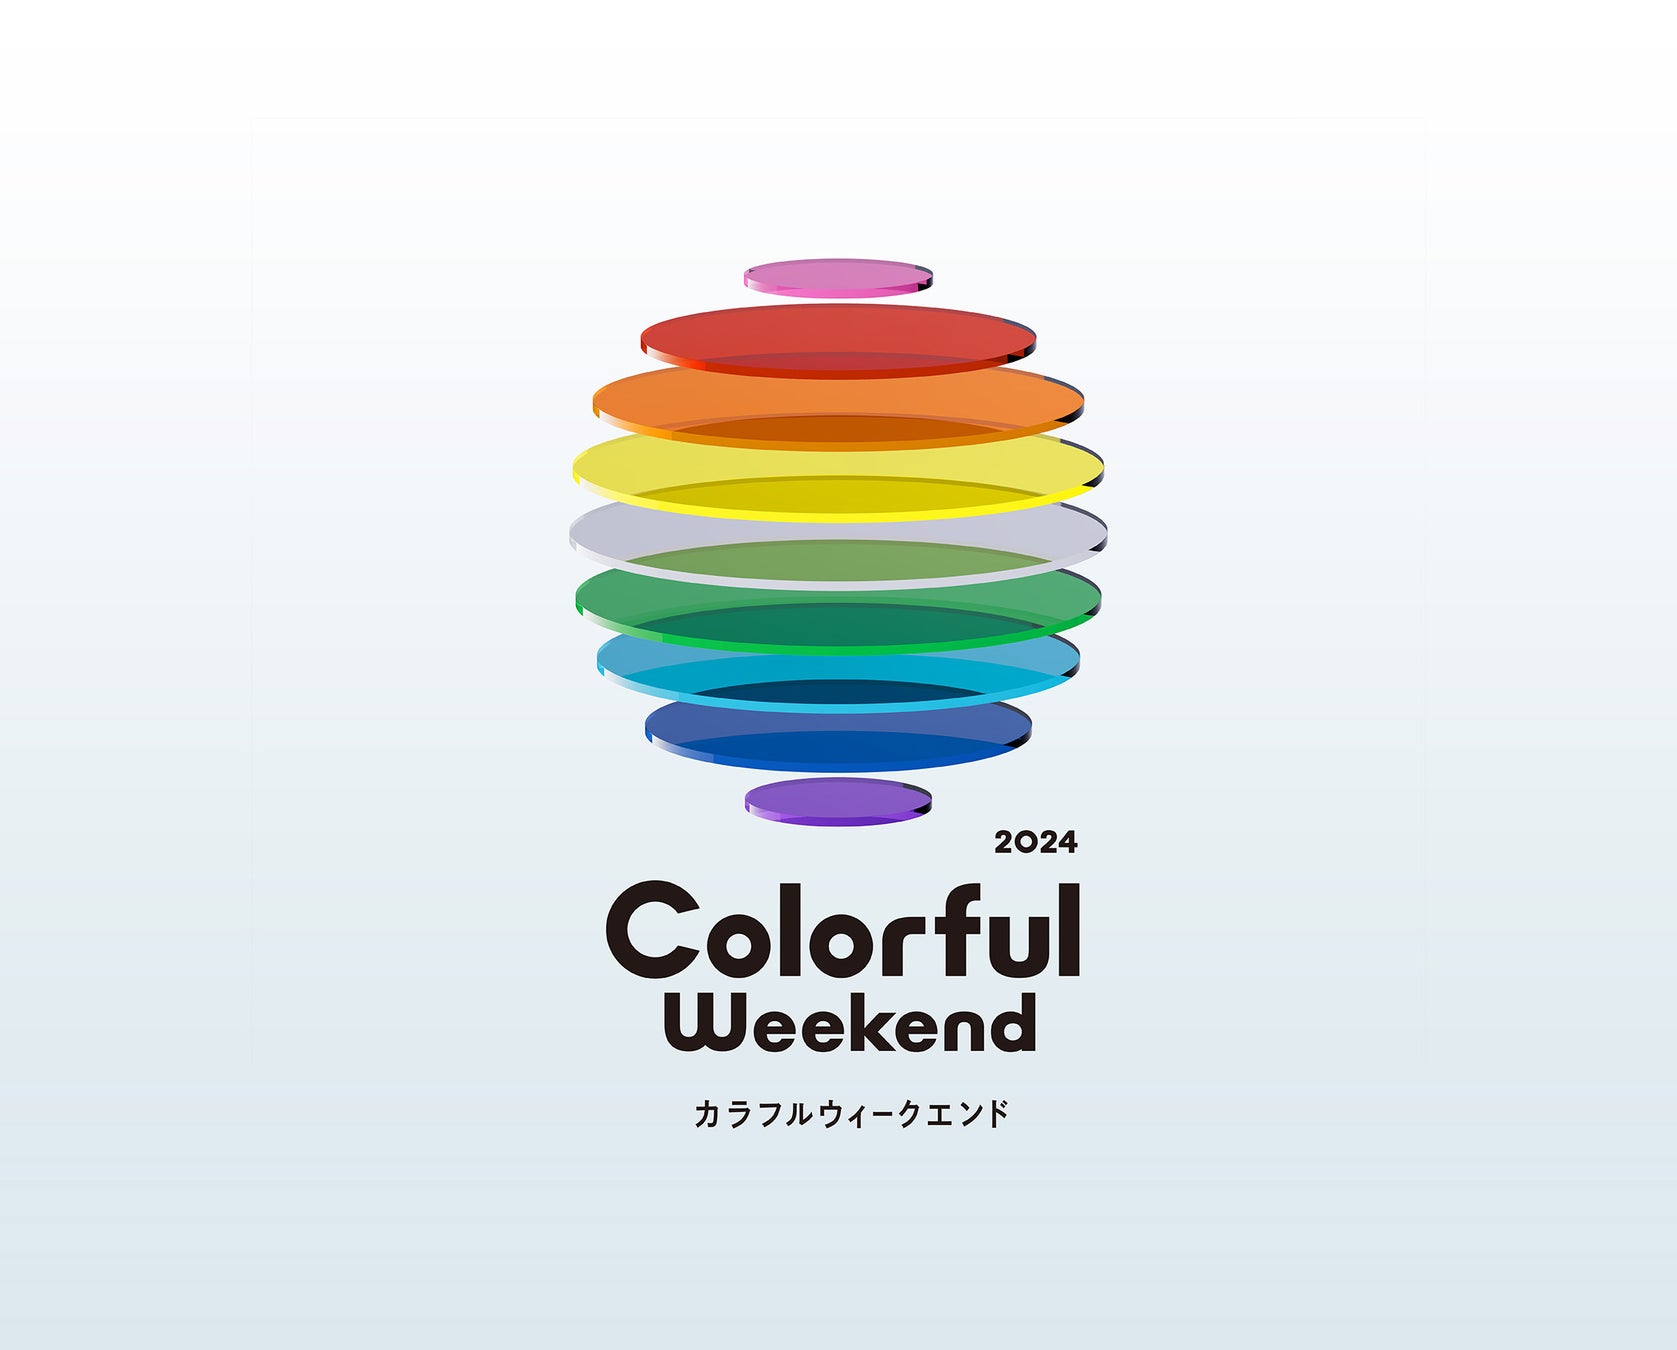 番組横断キャンペーン「Colorful Weekend」を通した社会的インパクトを可視化